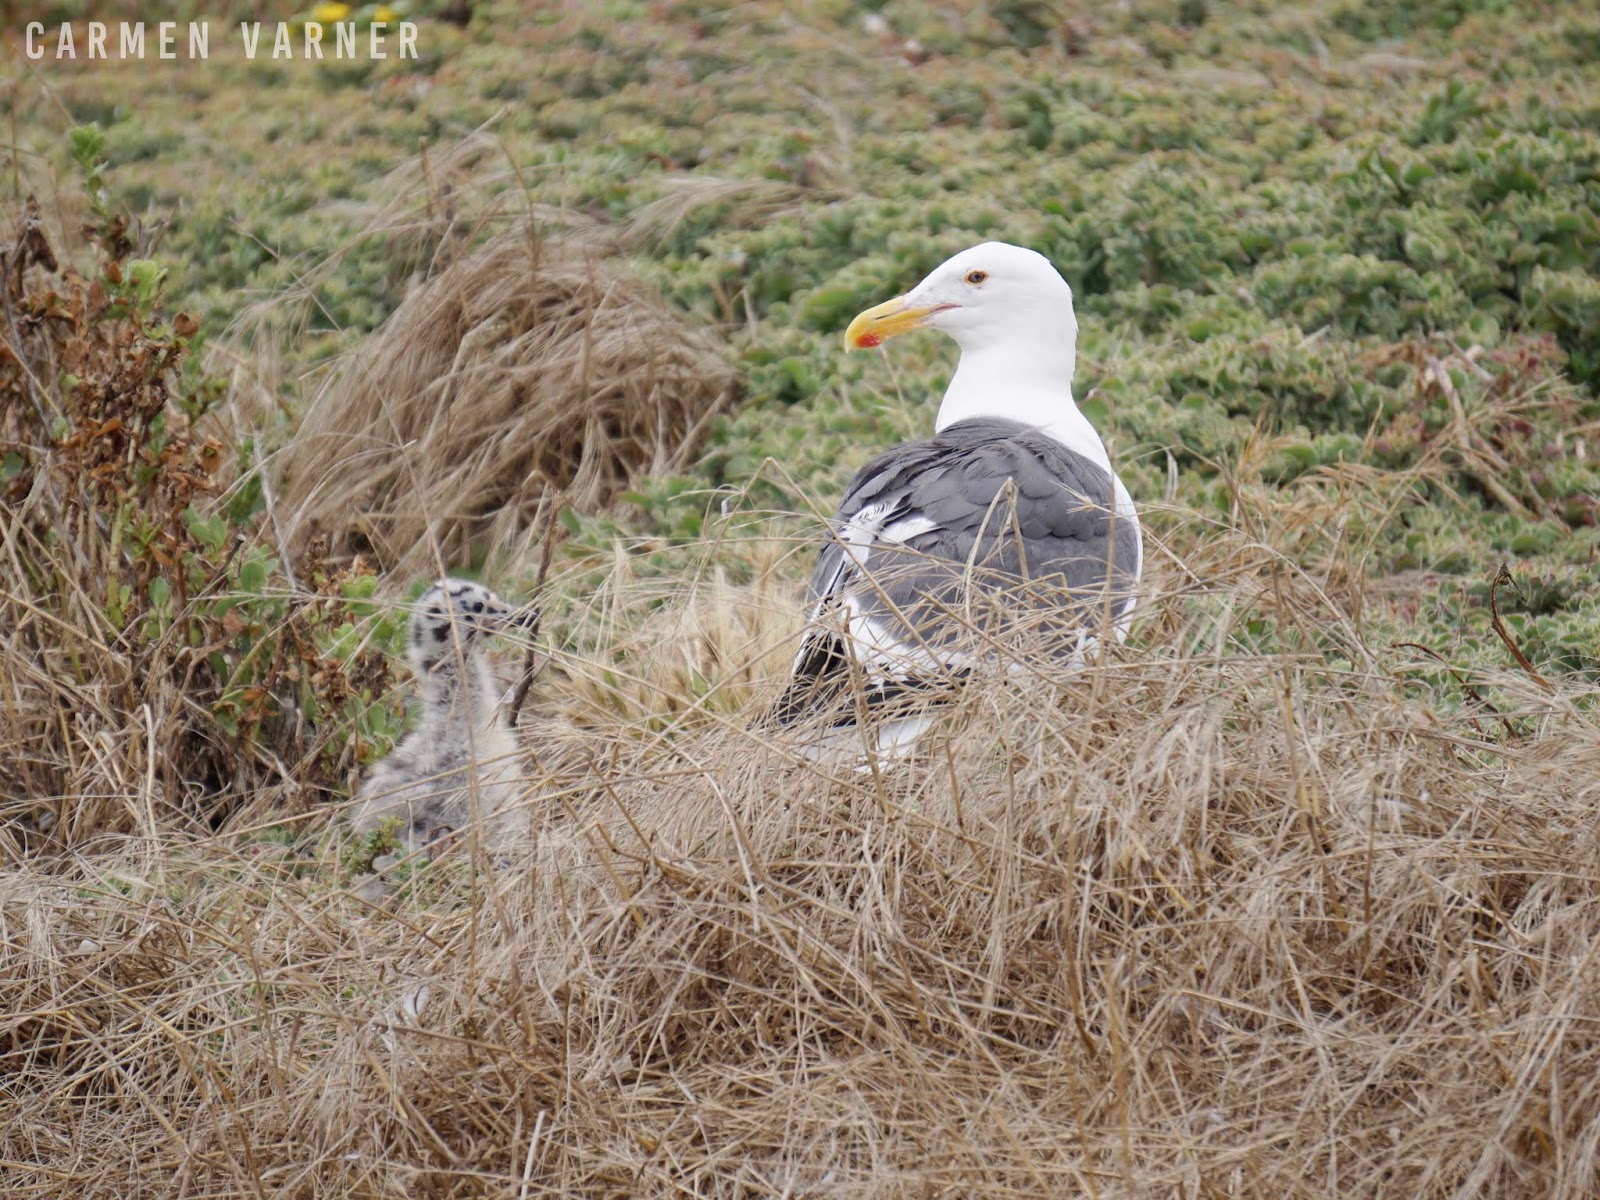 Animals on Anacapa Island: Western Gulls, Pelicans, Island Fox